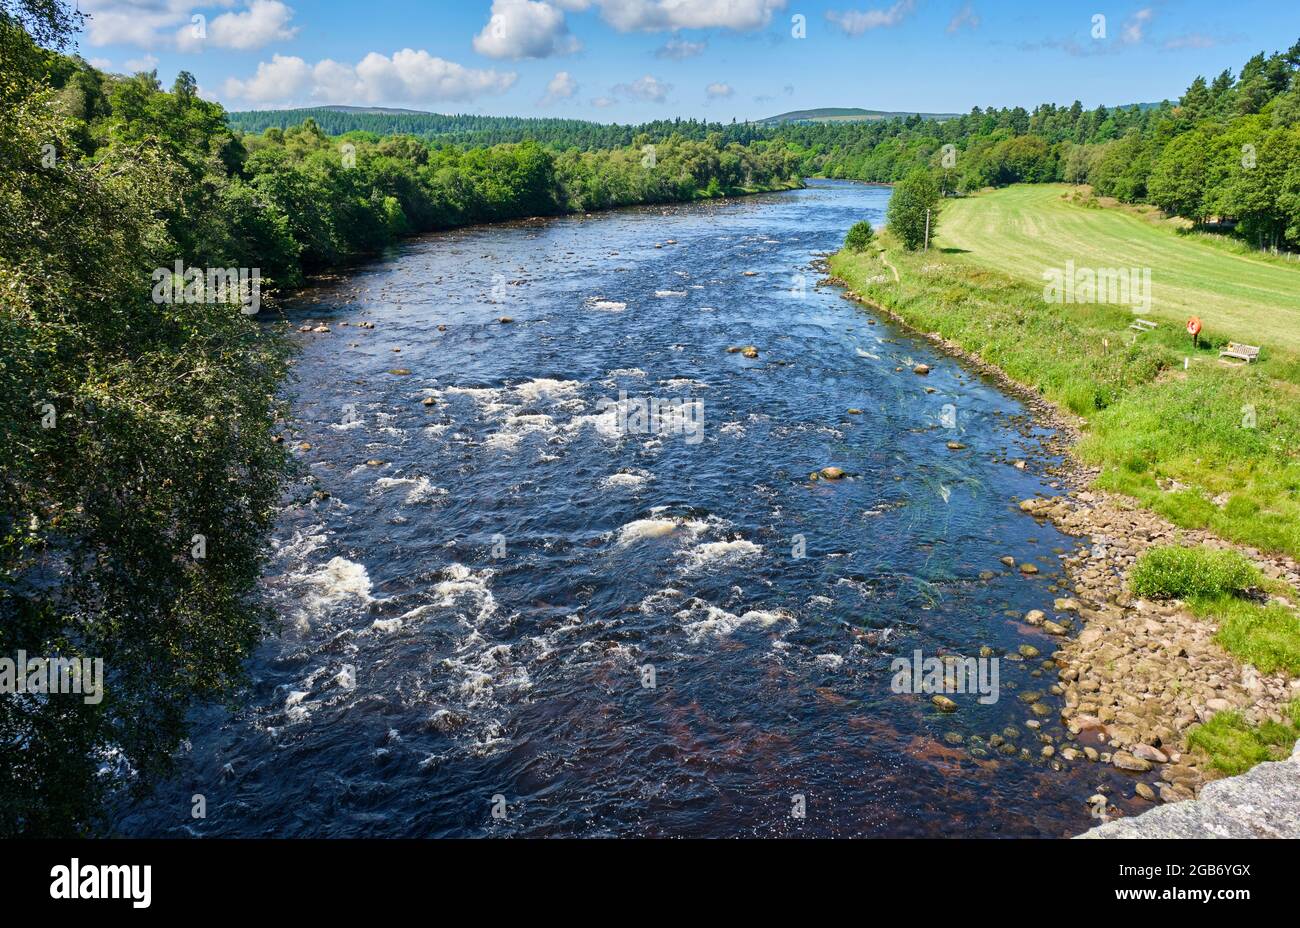 La rivière Spey depuis l'ancien pont Spey près de Grantown-on-Spey, Badenoch et Speyside, Écosse Banque D'Images